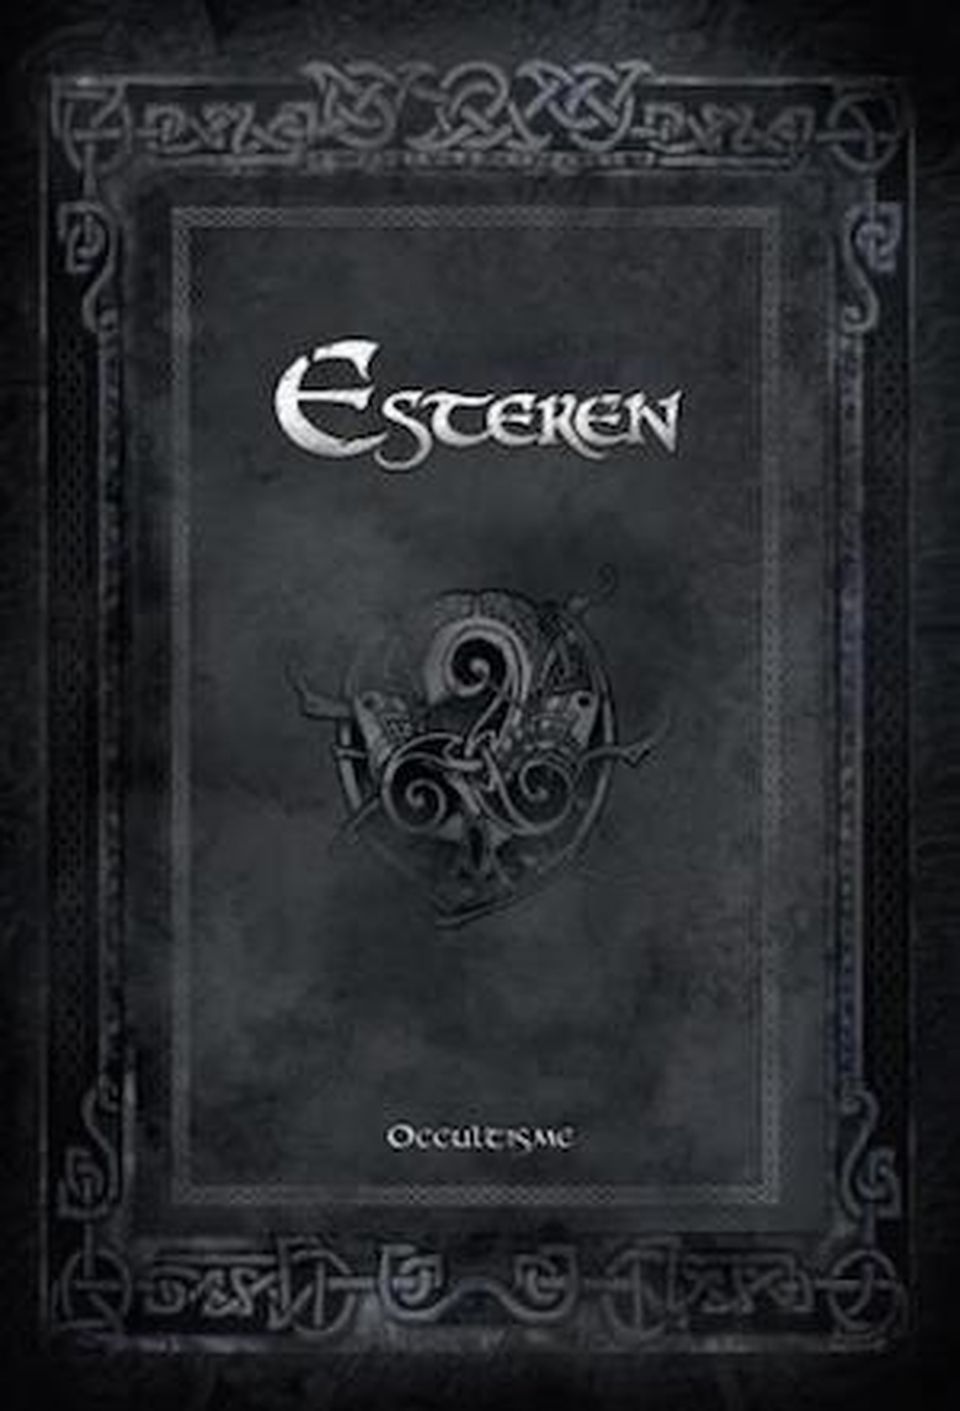 Les Ombres d'Esteren - Occultisme + CD (Édition limitée) image